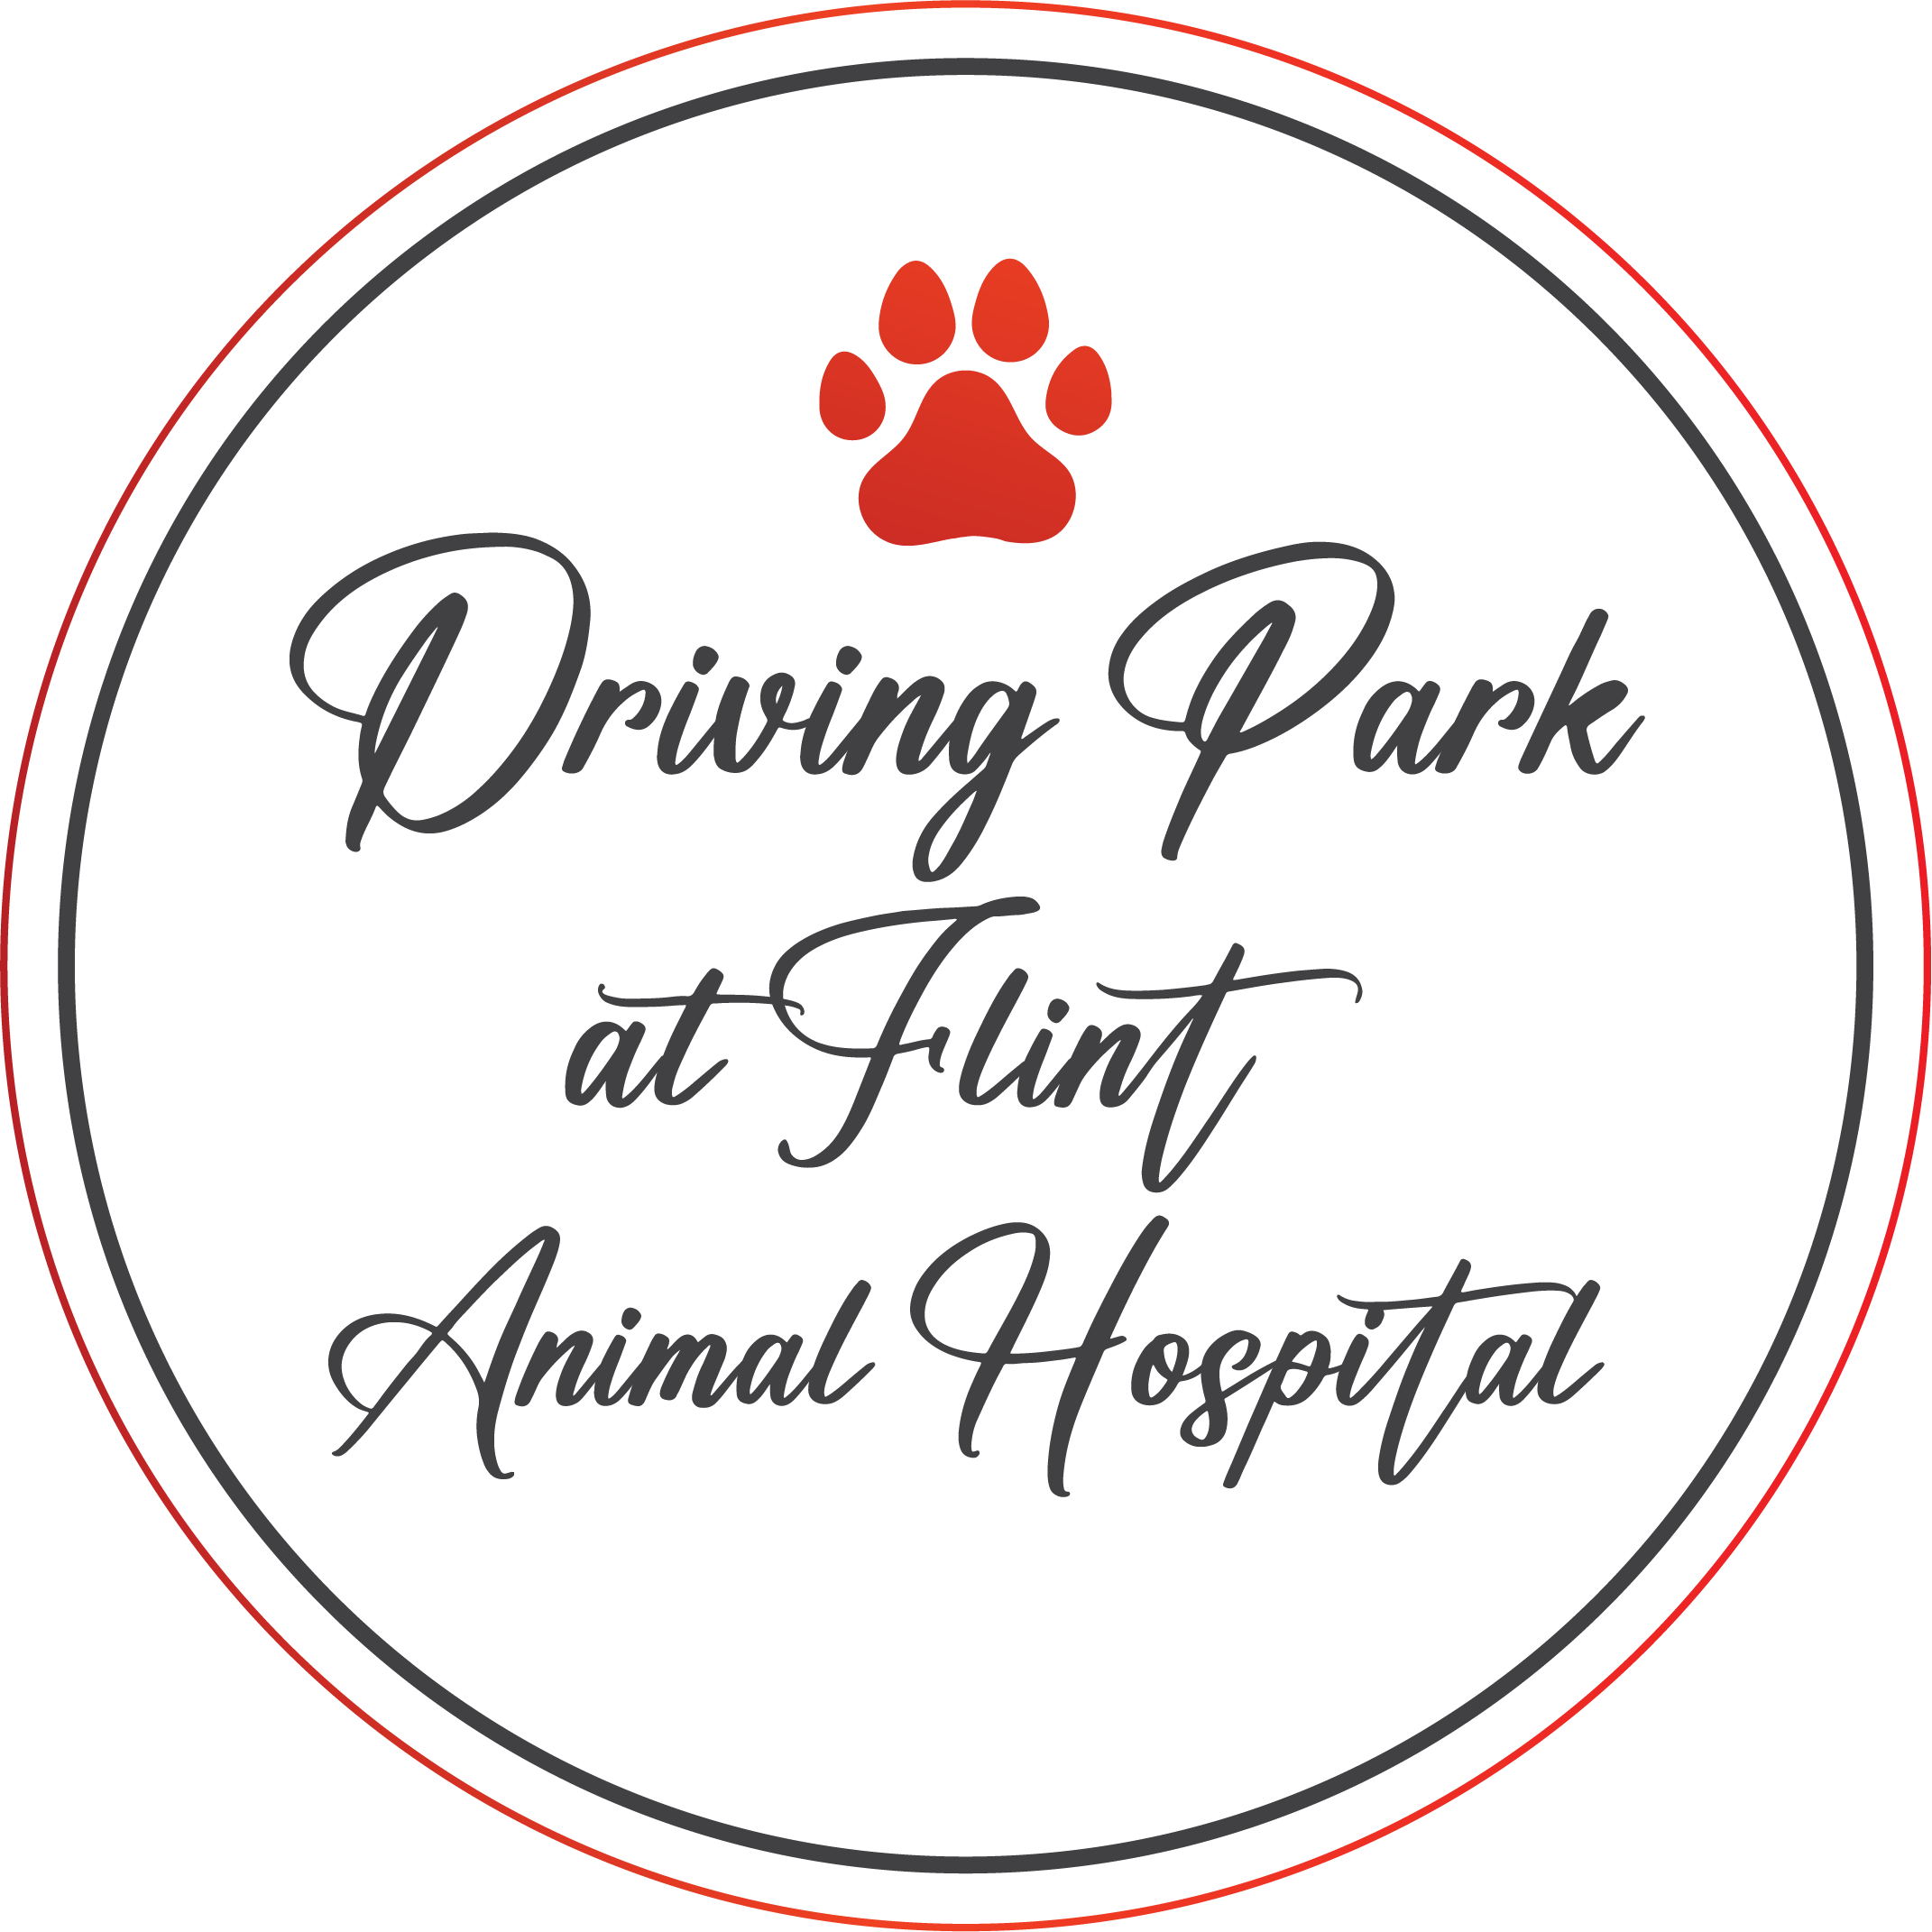 Driving Park at Flint Animal Hospital logo